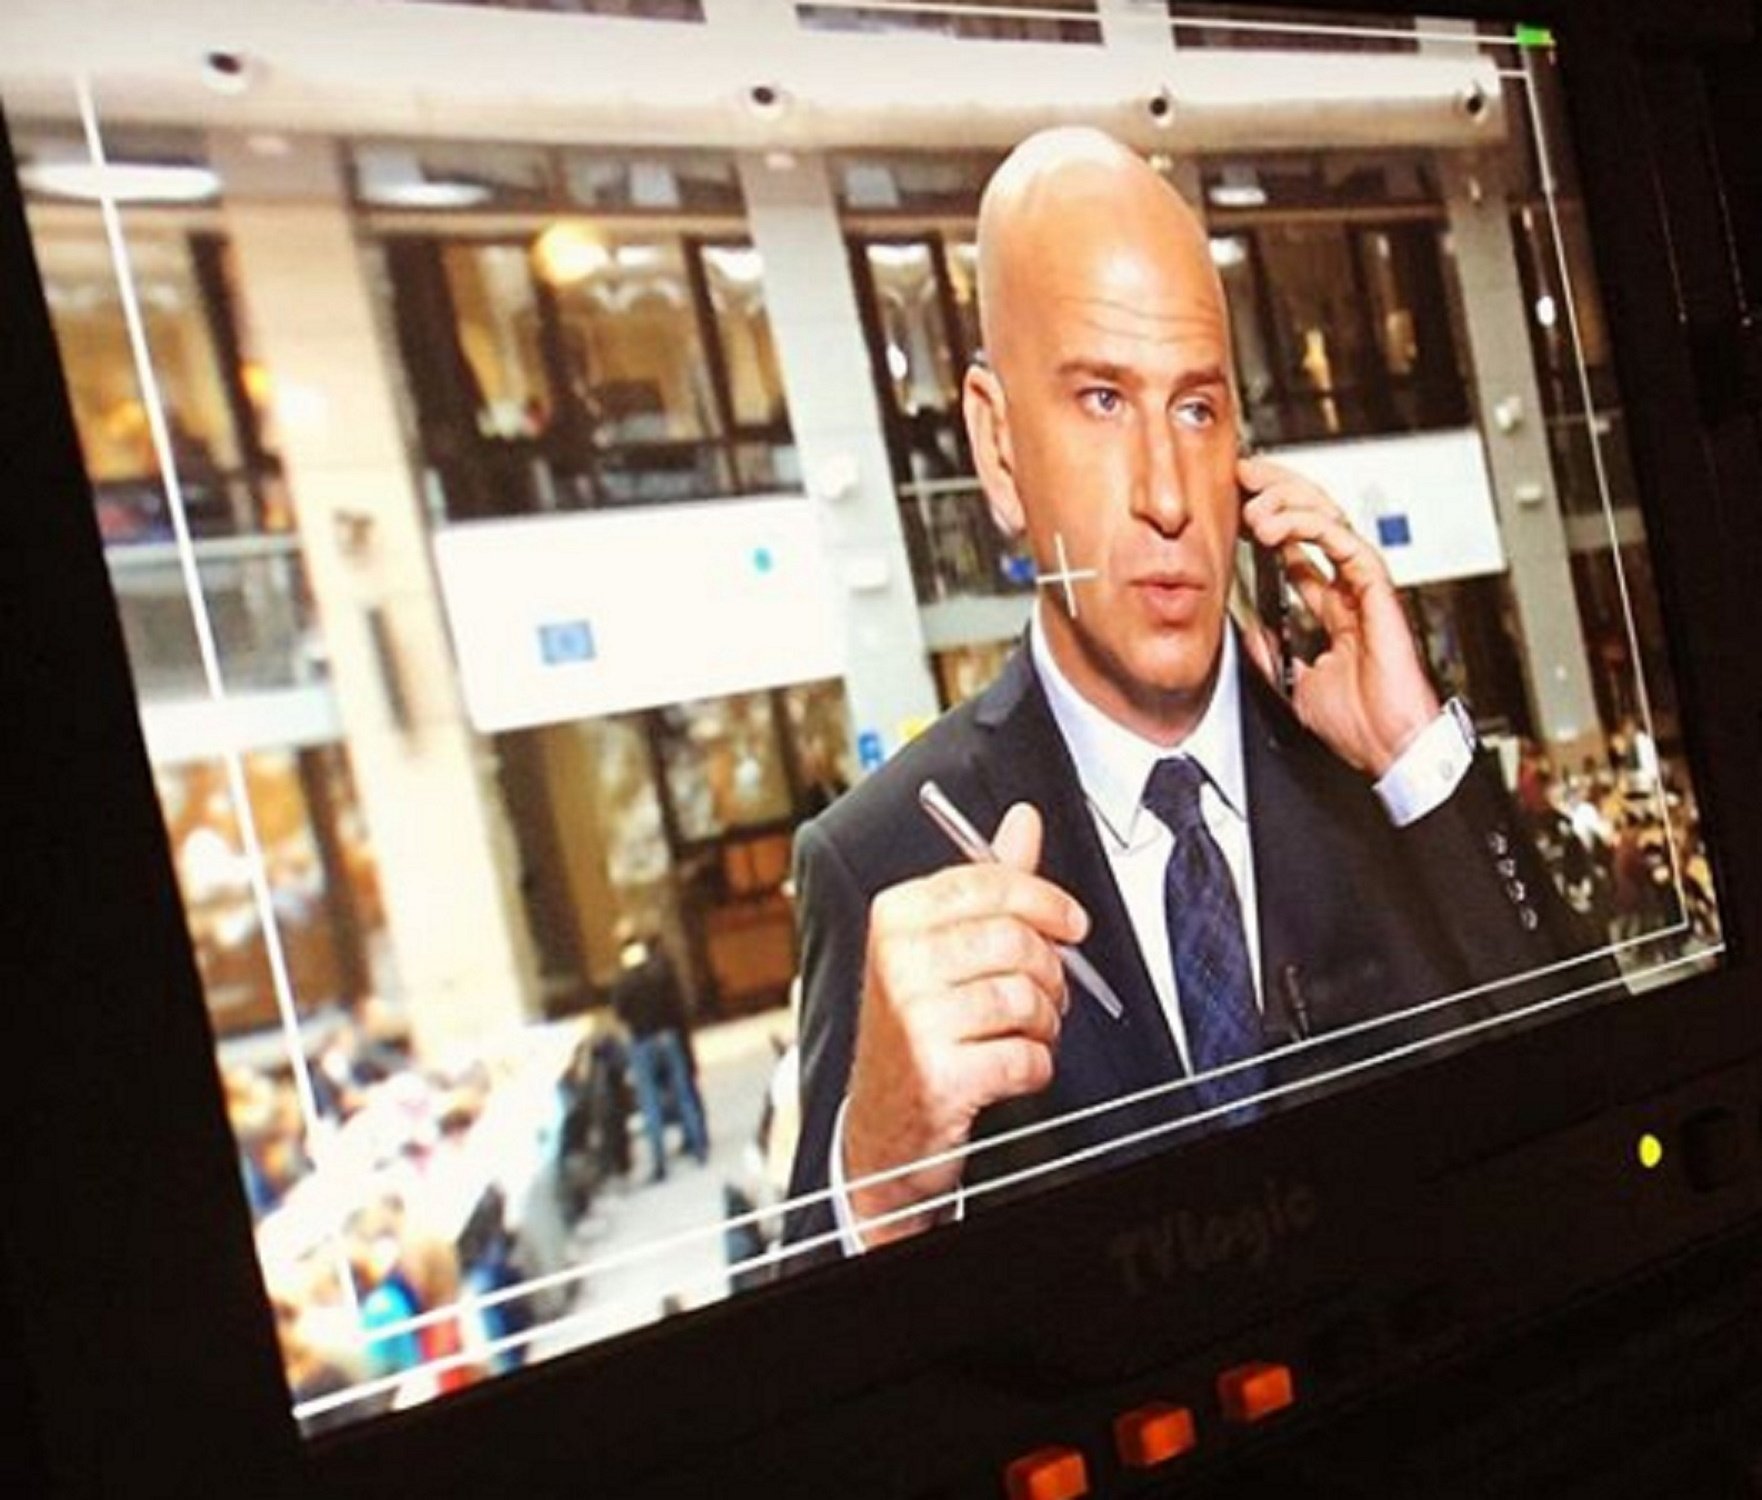 Sorpresa: este es el nuevo corresponsal de TV3 en Bruselas en lugar de Coral